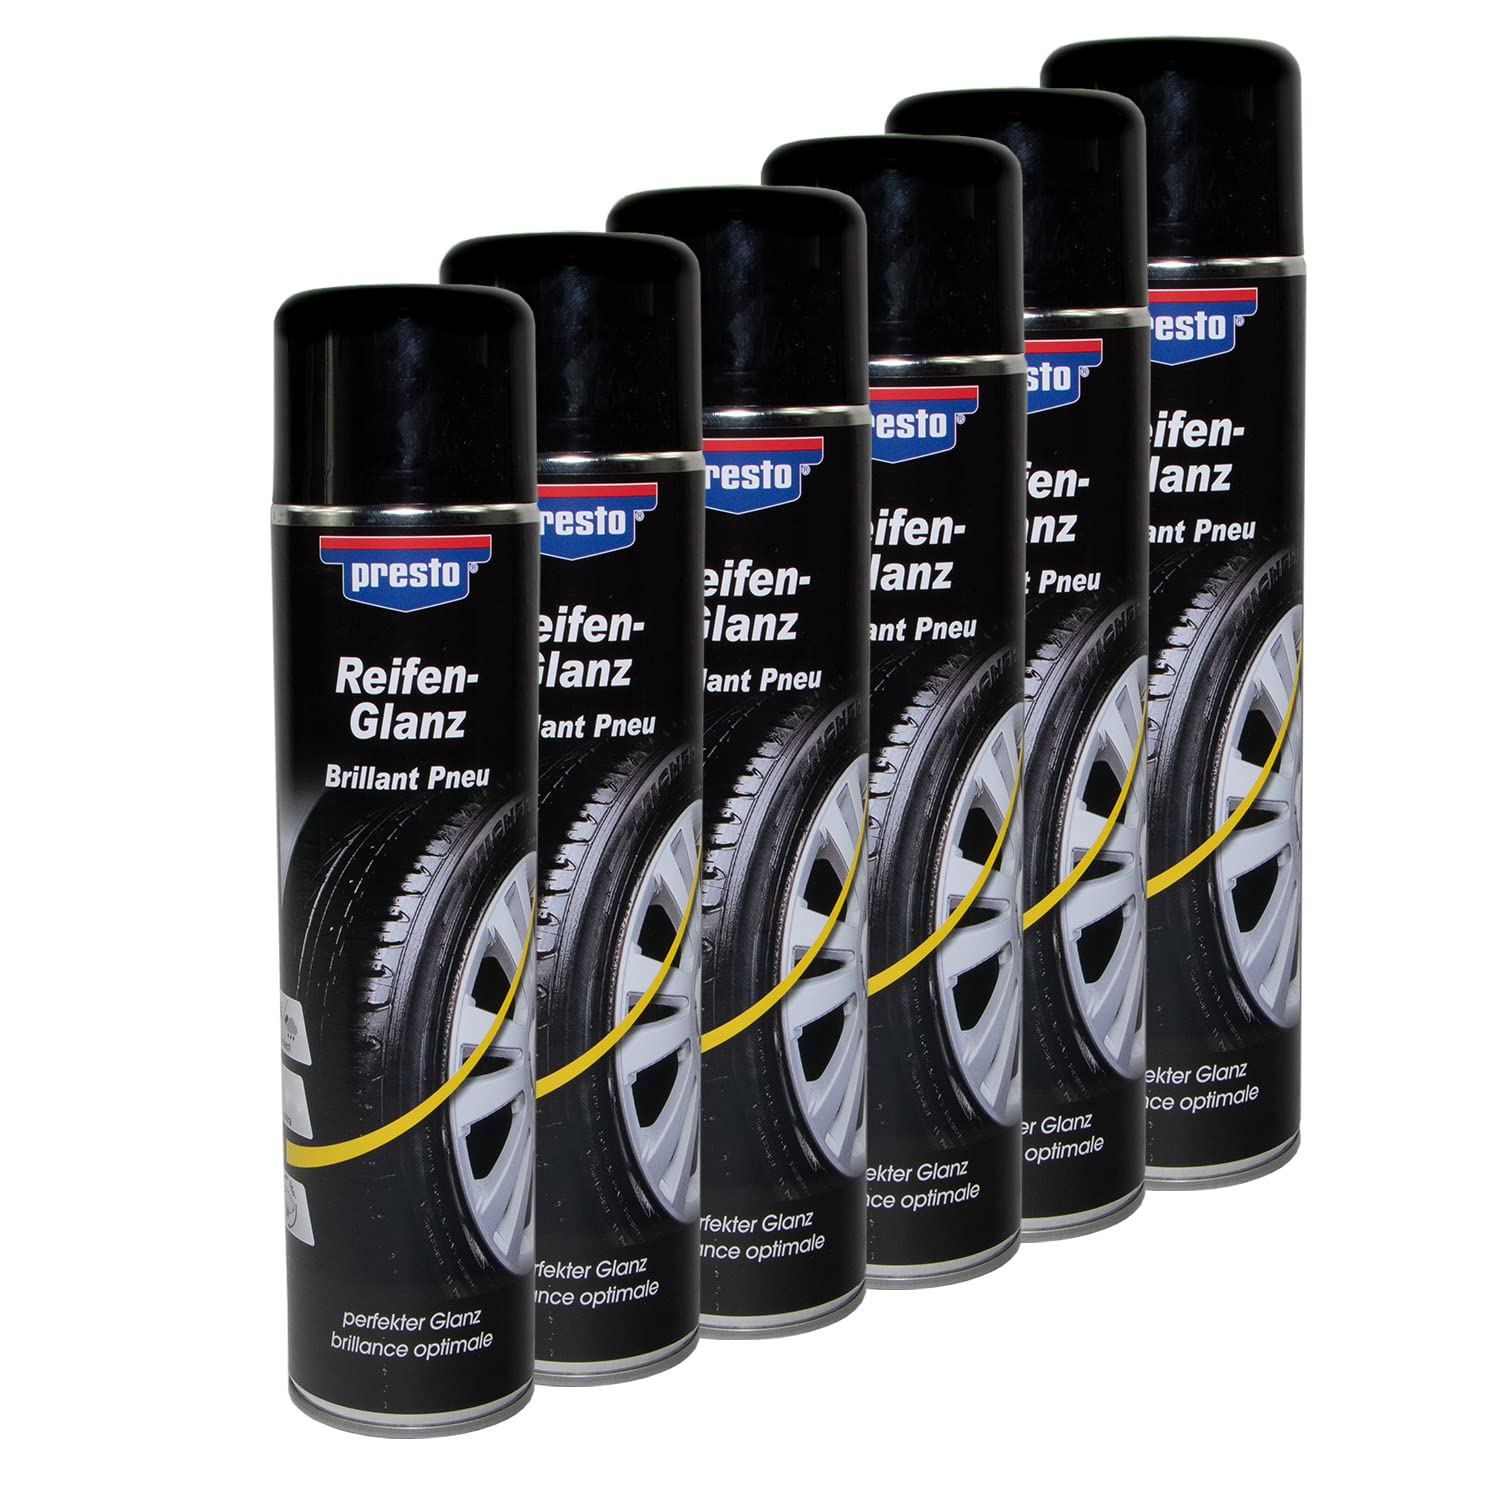 Reifenglanz Spray Reifenpflege Schutz Glanz Versiegelung Presto 383458 6 X 600 ml von PRESTO_bundle